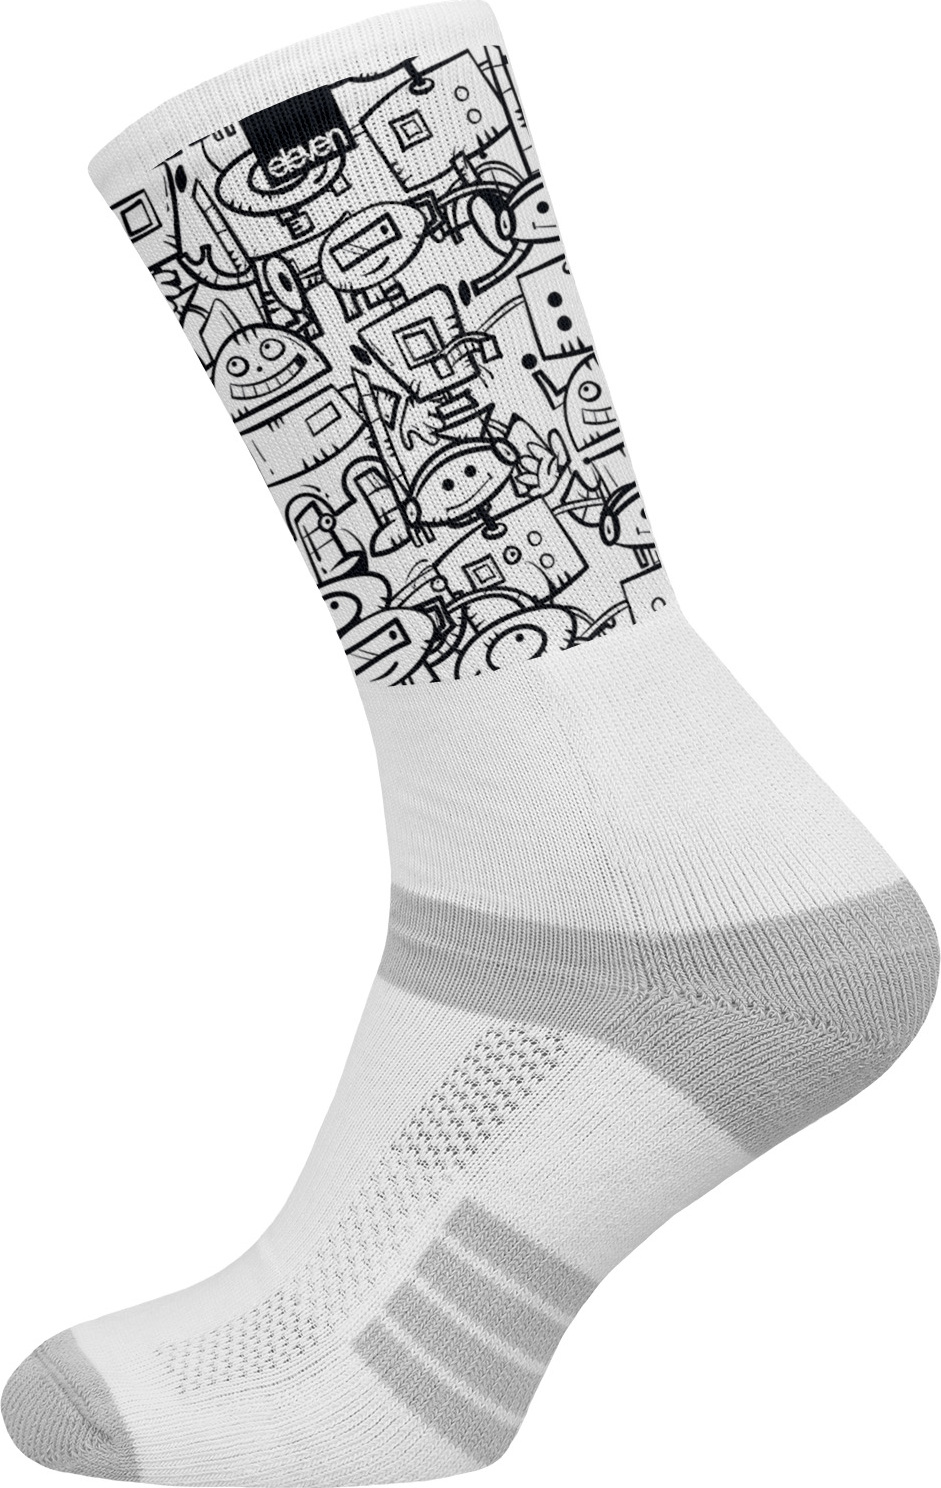 Ponožky ELEVEN Suba Botsketch bílé Velikost: M (39-41)